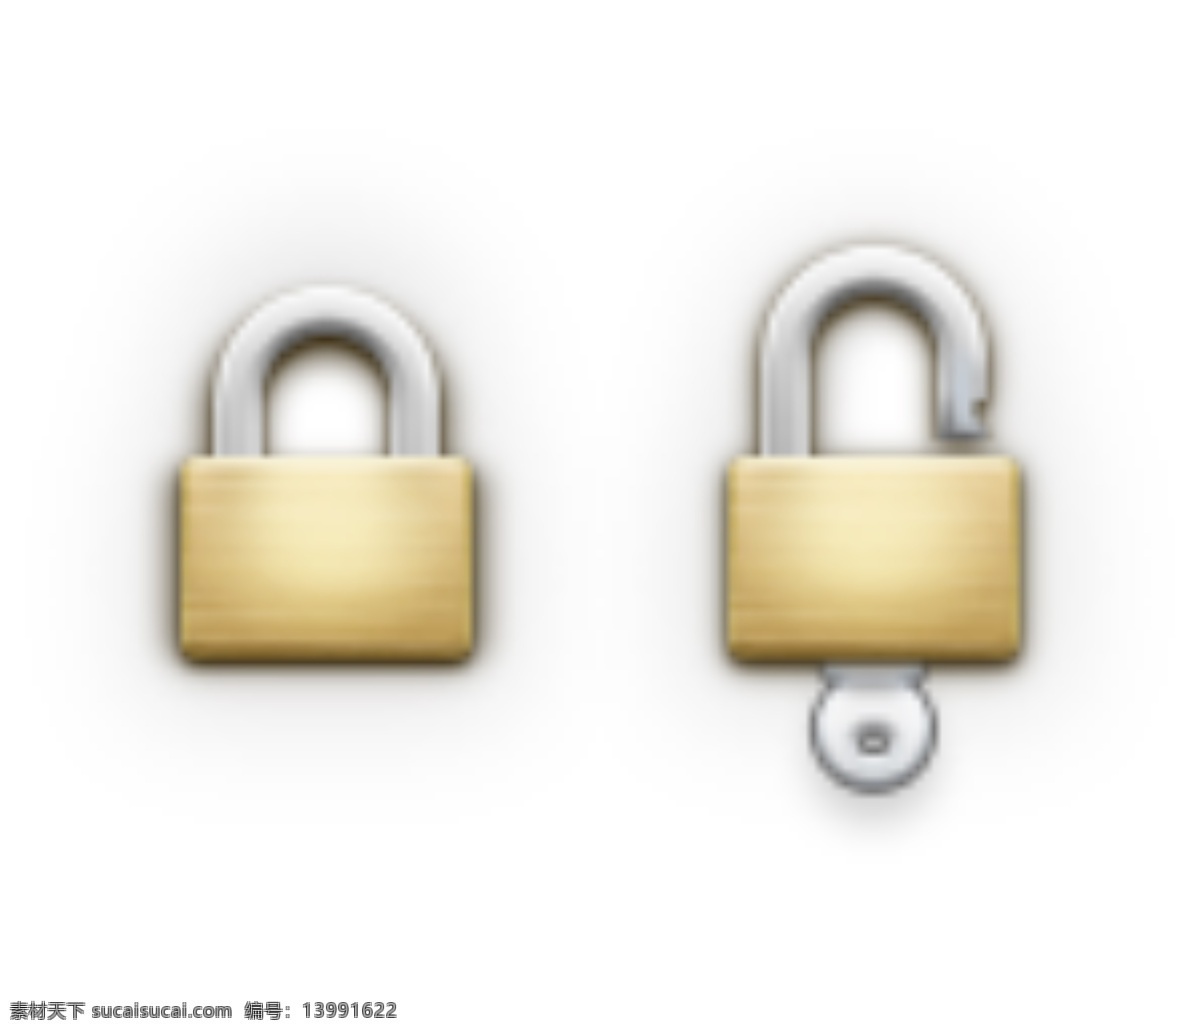 橙色 锁 和解 钥匙 图标 图标设计 icon icon设计 icon图标 网页图标 锁图标 锁icon 解锁图标 解锁icon 解锁 钥匙解锁